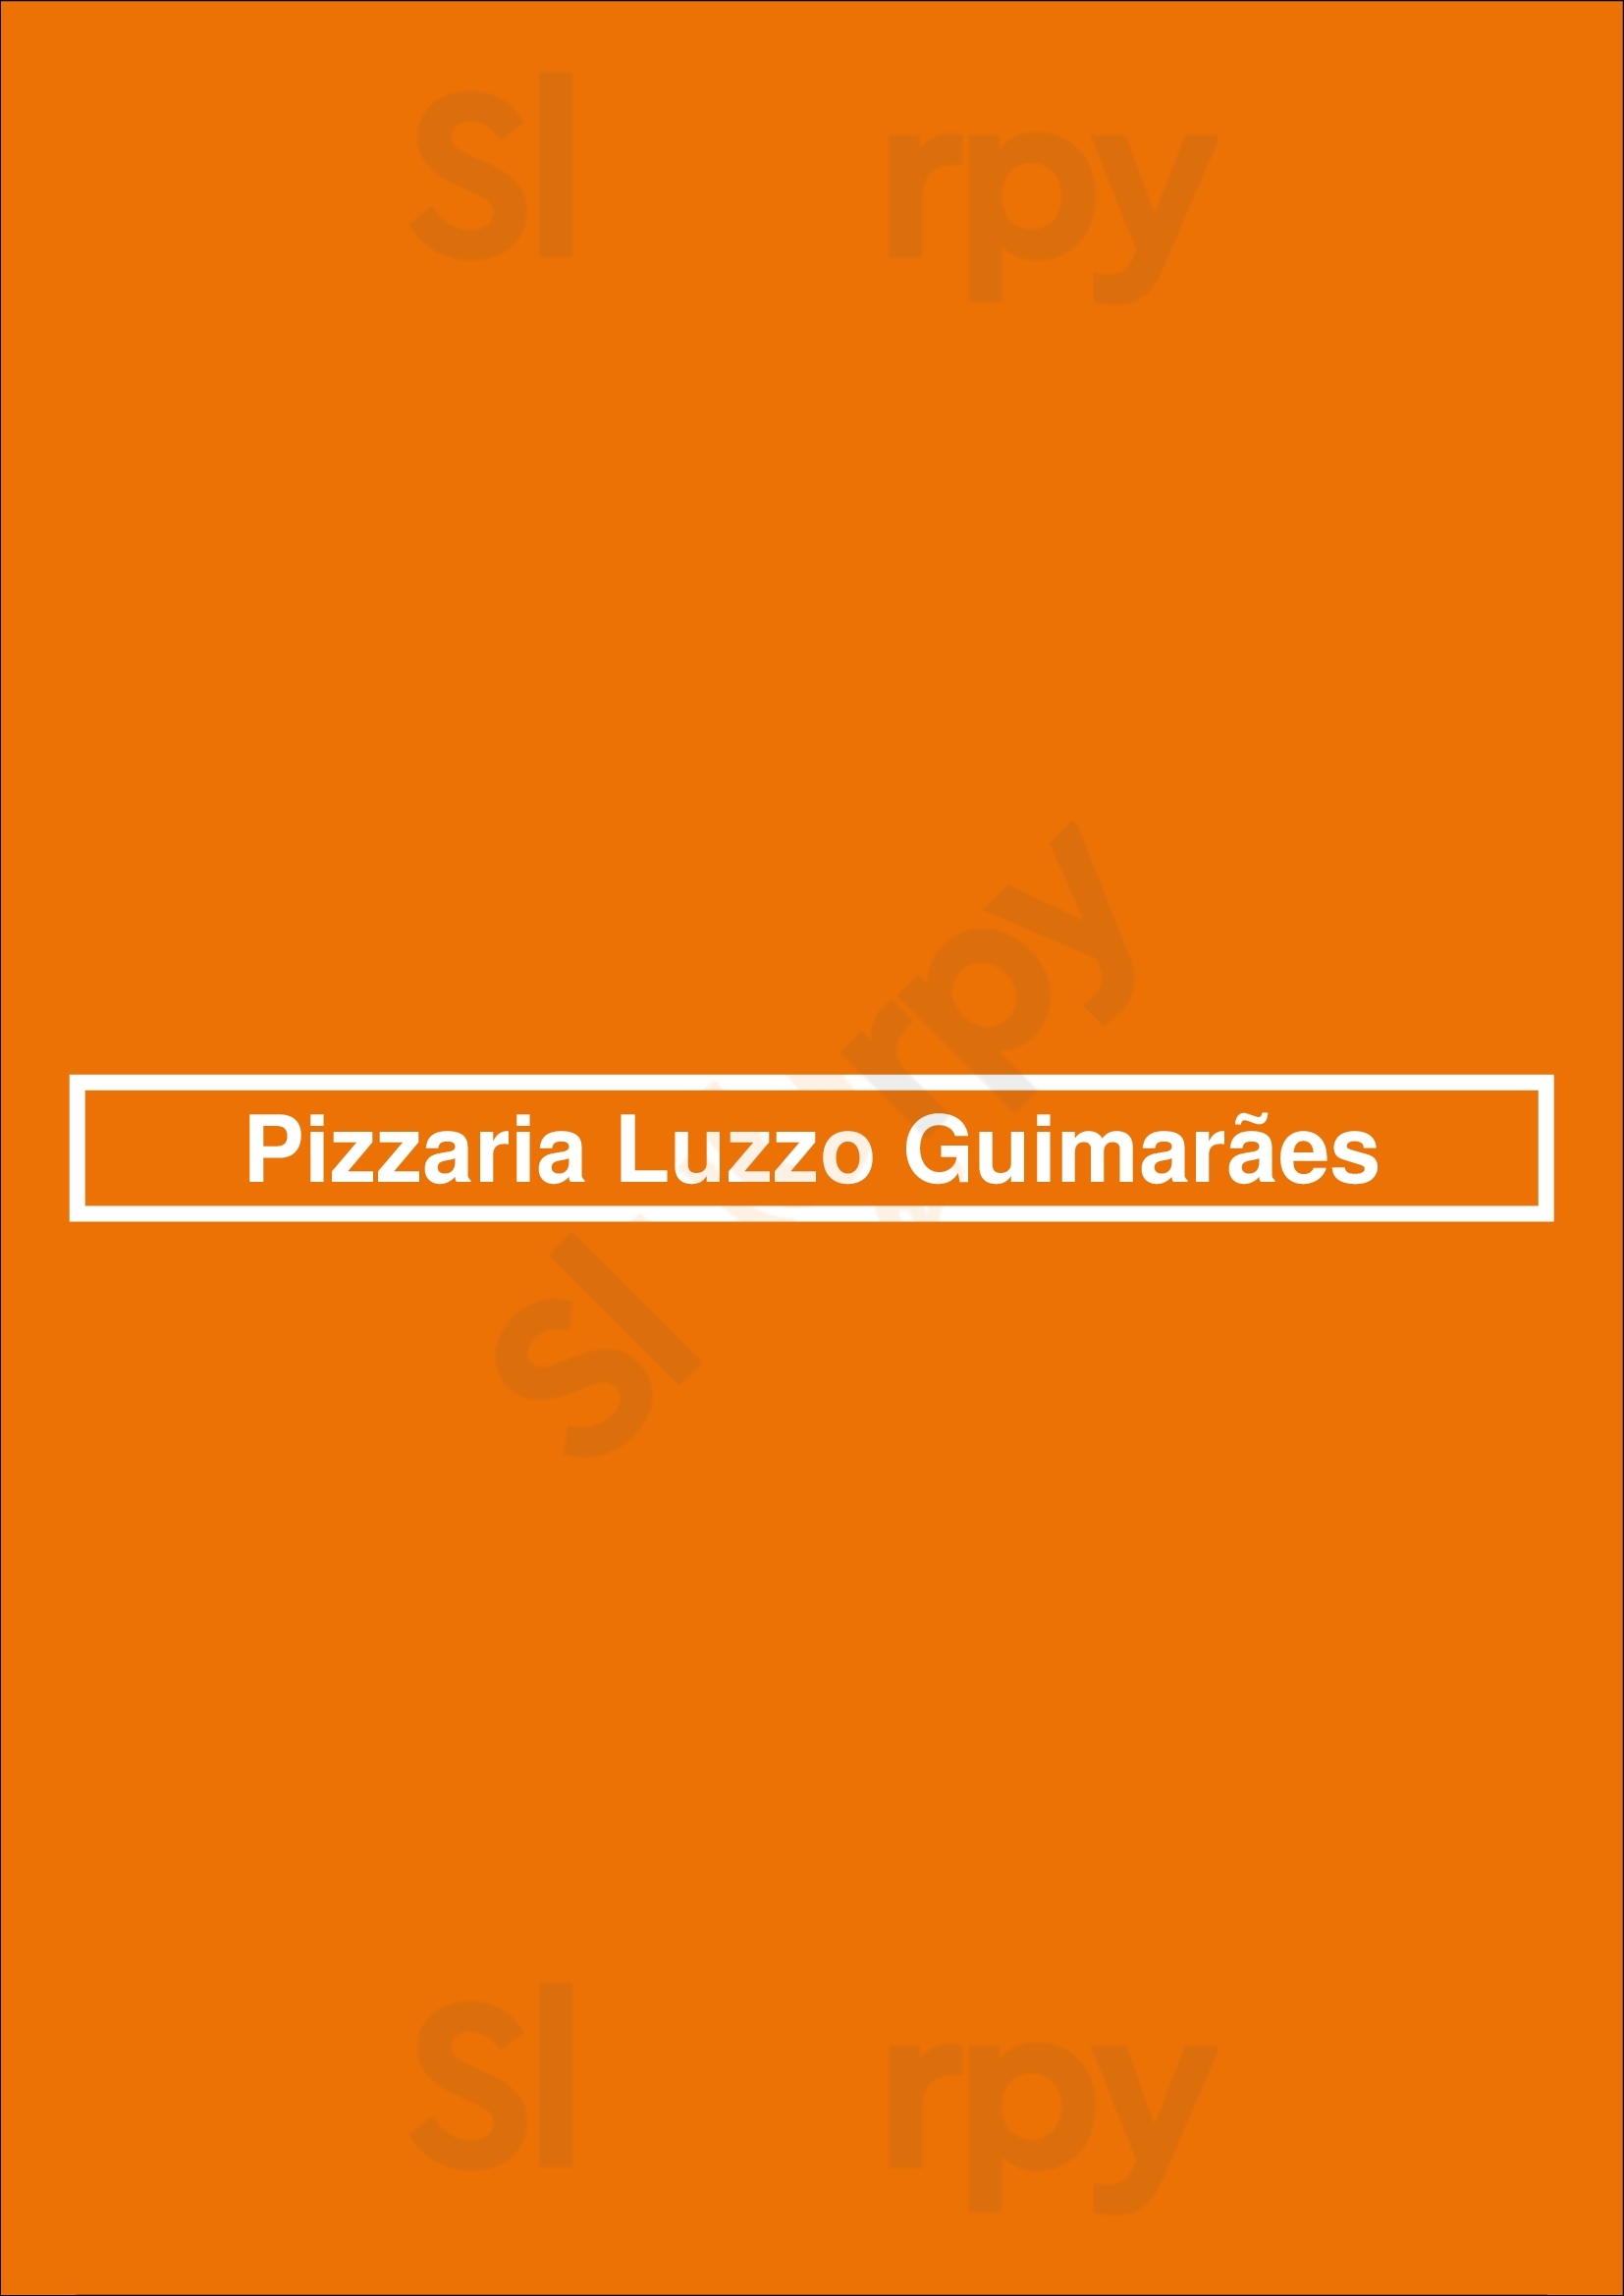 Pizzaria Luzzo Guimarães Guimarães Menu - 1